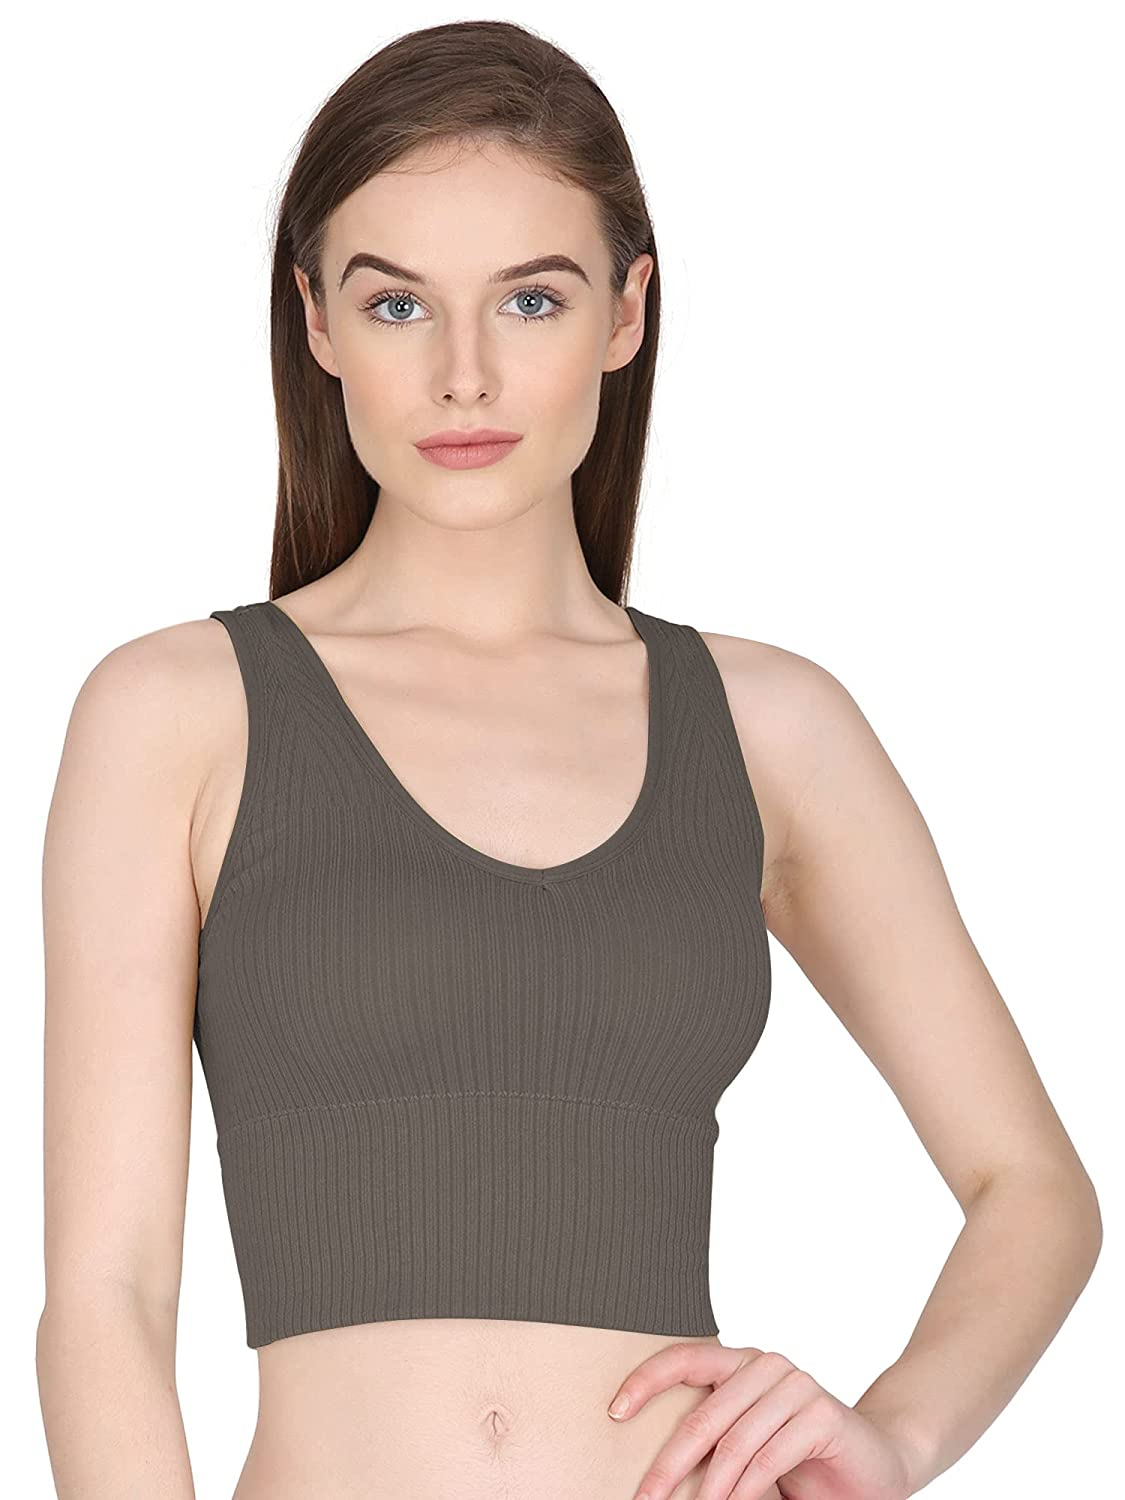 ShopOlica Women's Sports Bra T Shirt Style Tank Top Cotton Bras